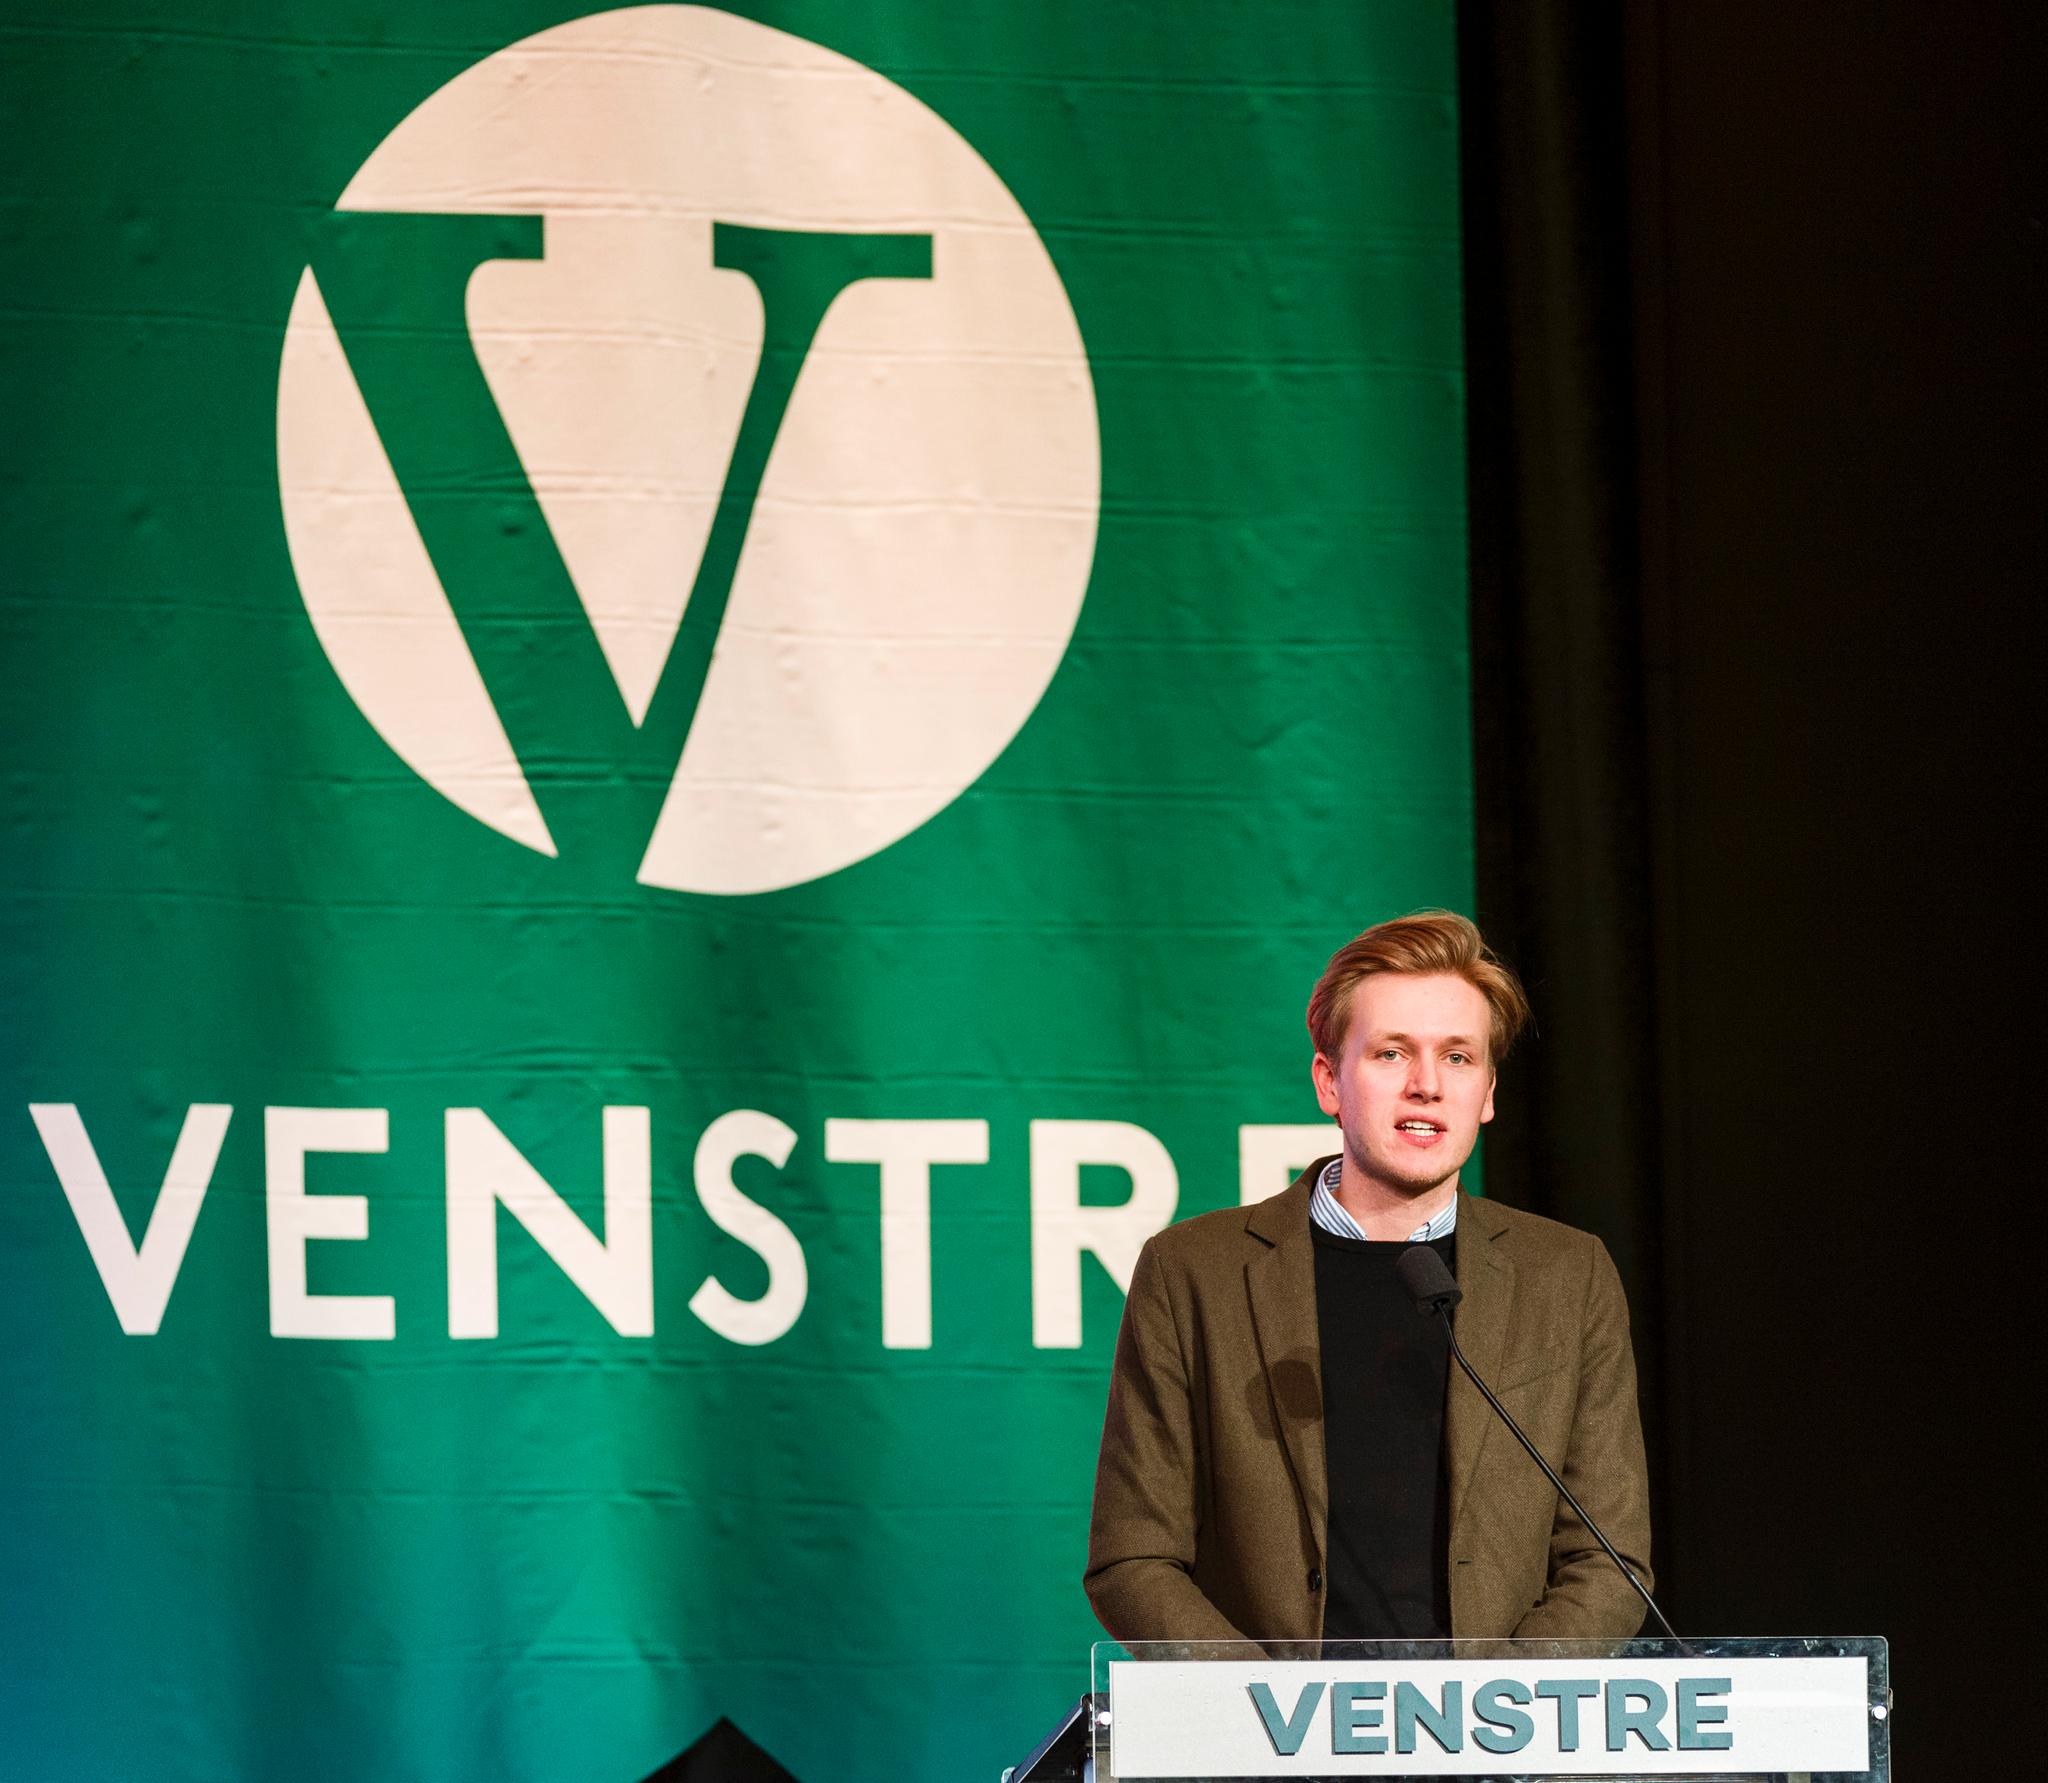 Lederen i Unge Venstre, Sondre Hansmark, har i flere år kjempet for at Venstre skal si ja til norsk EU-medlemskap. Nå har de tyngste fylkeslagene i Venstre landet på et ja.